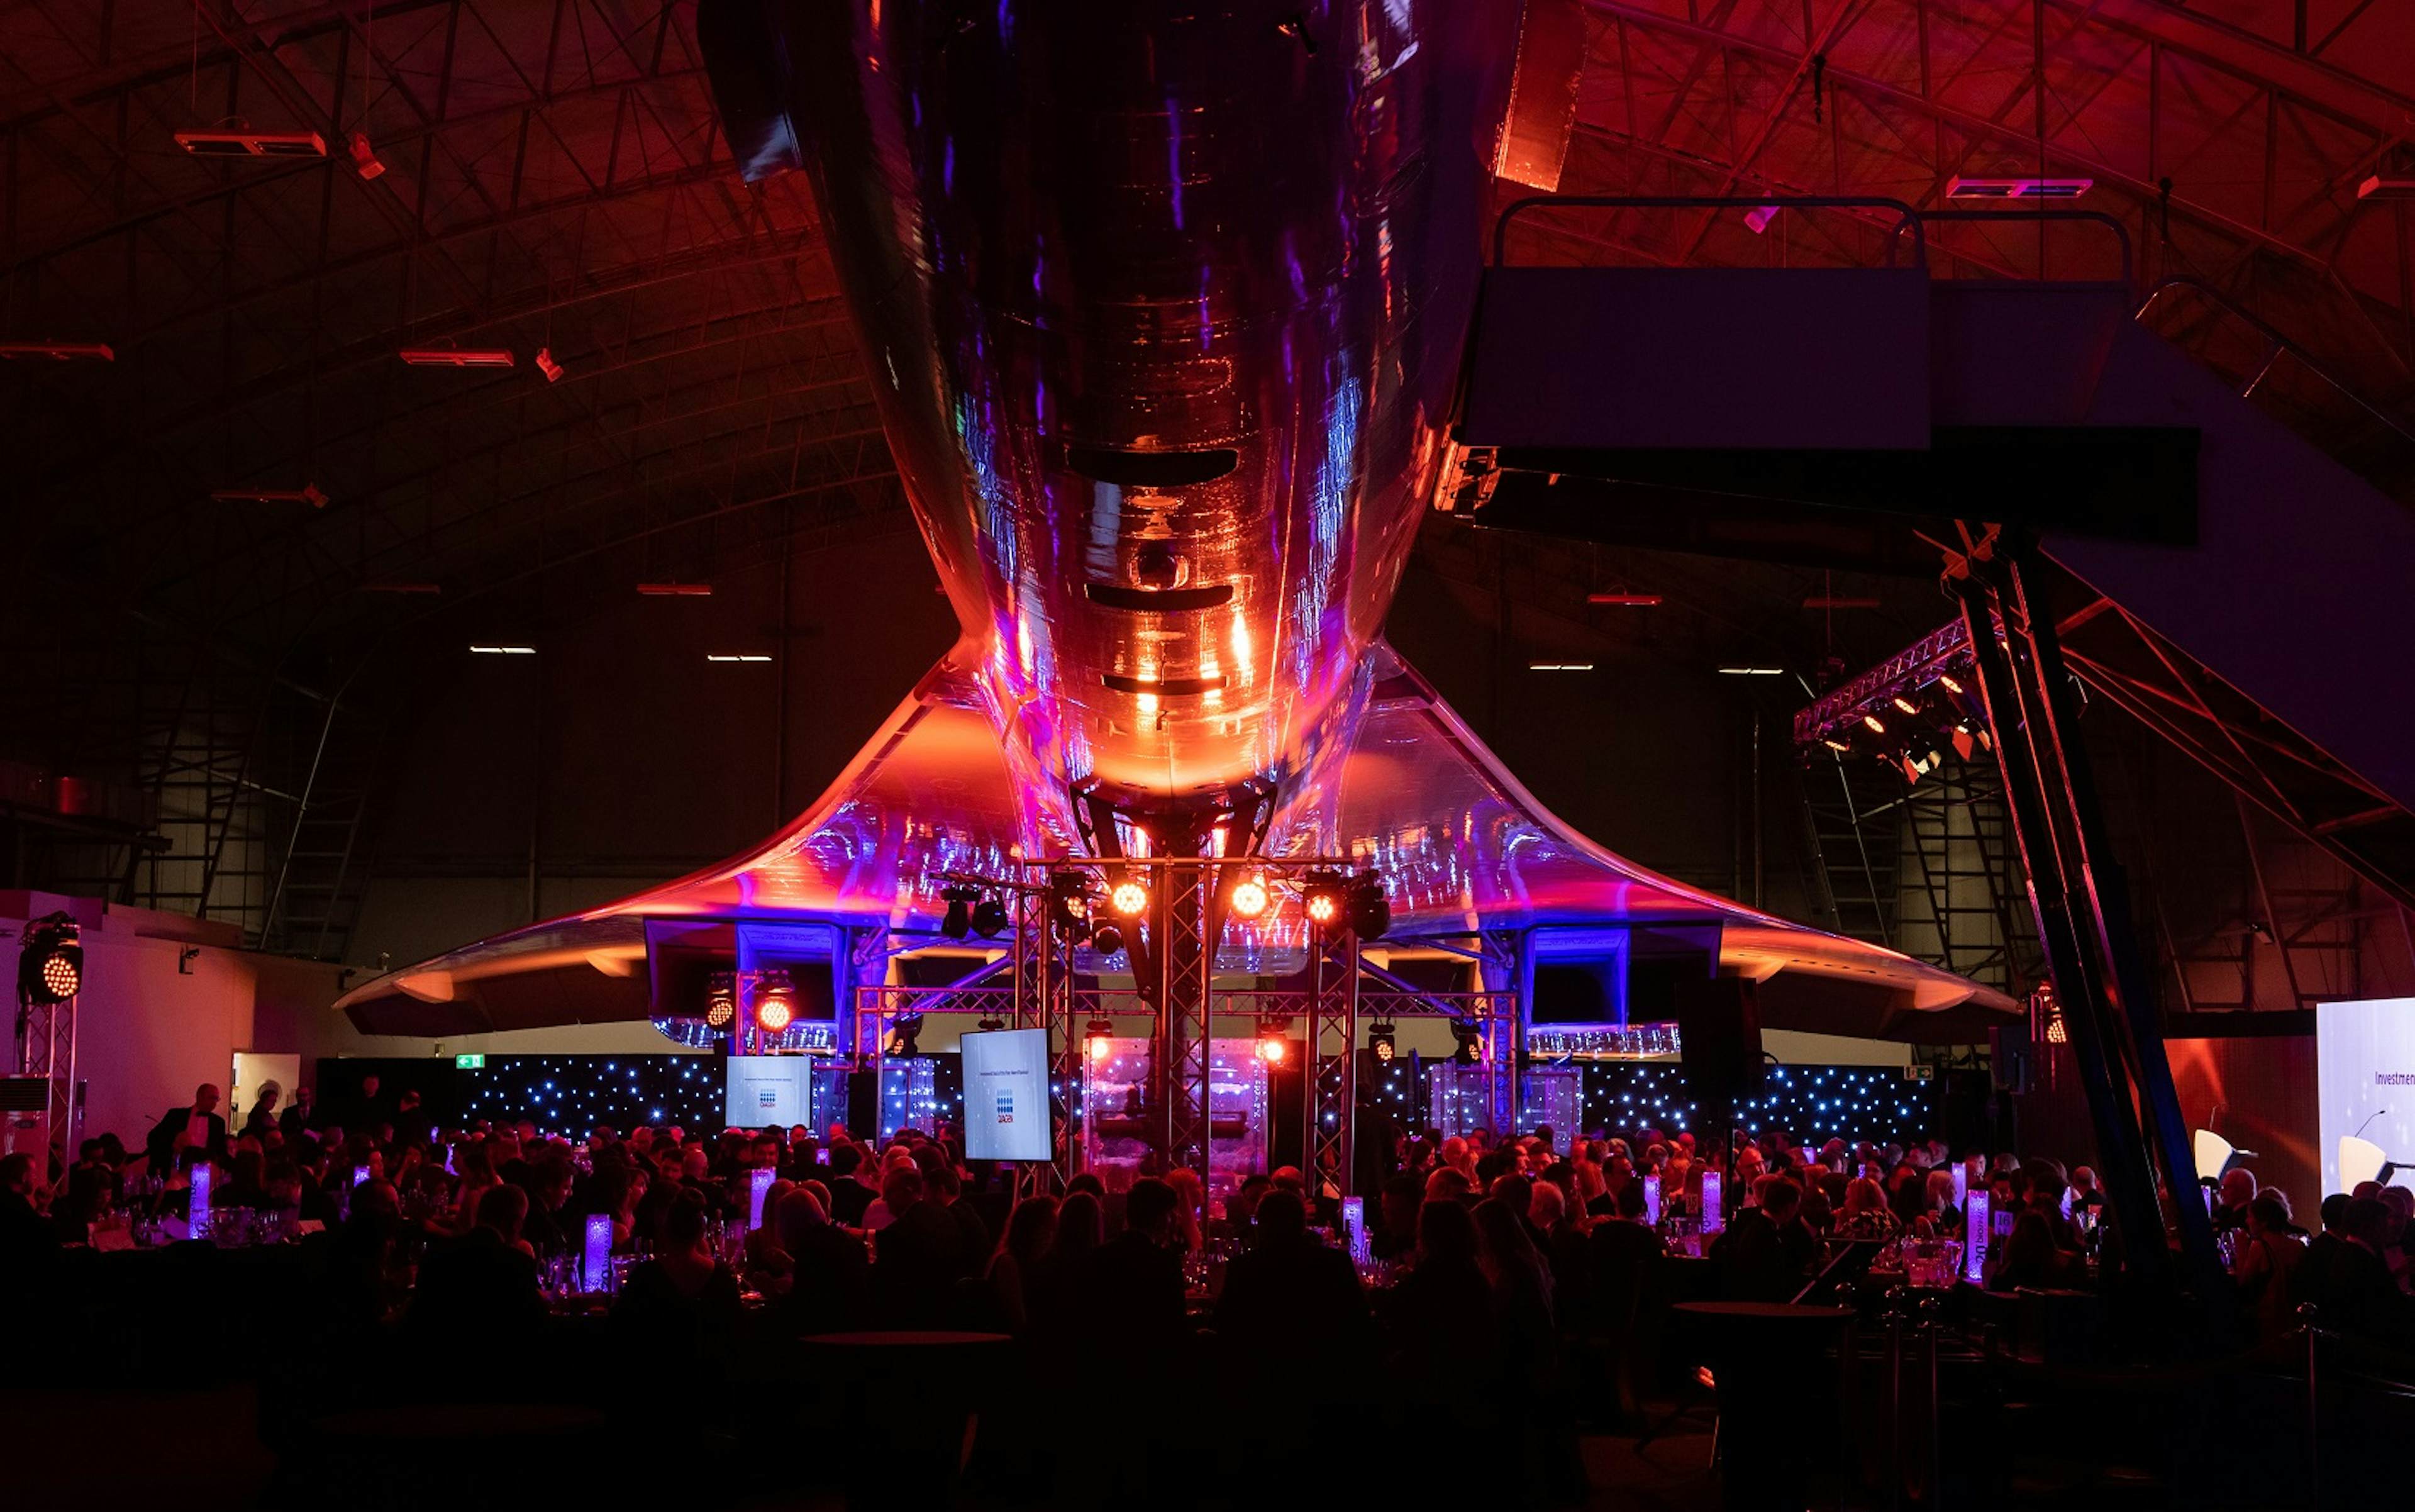 Concorde Conference Centre - Concorde Hangar image 1